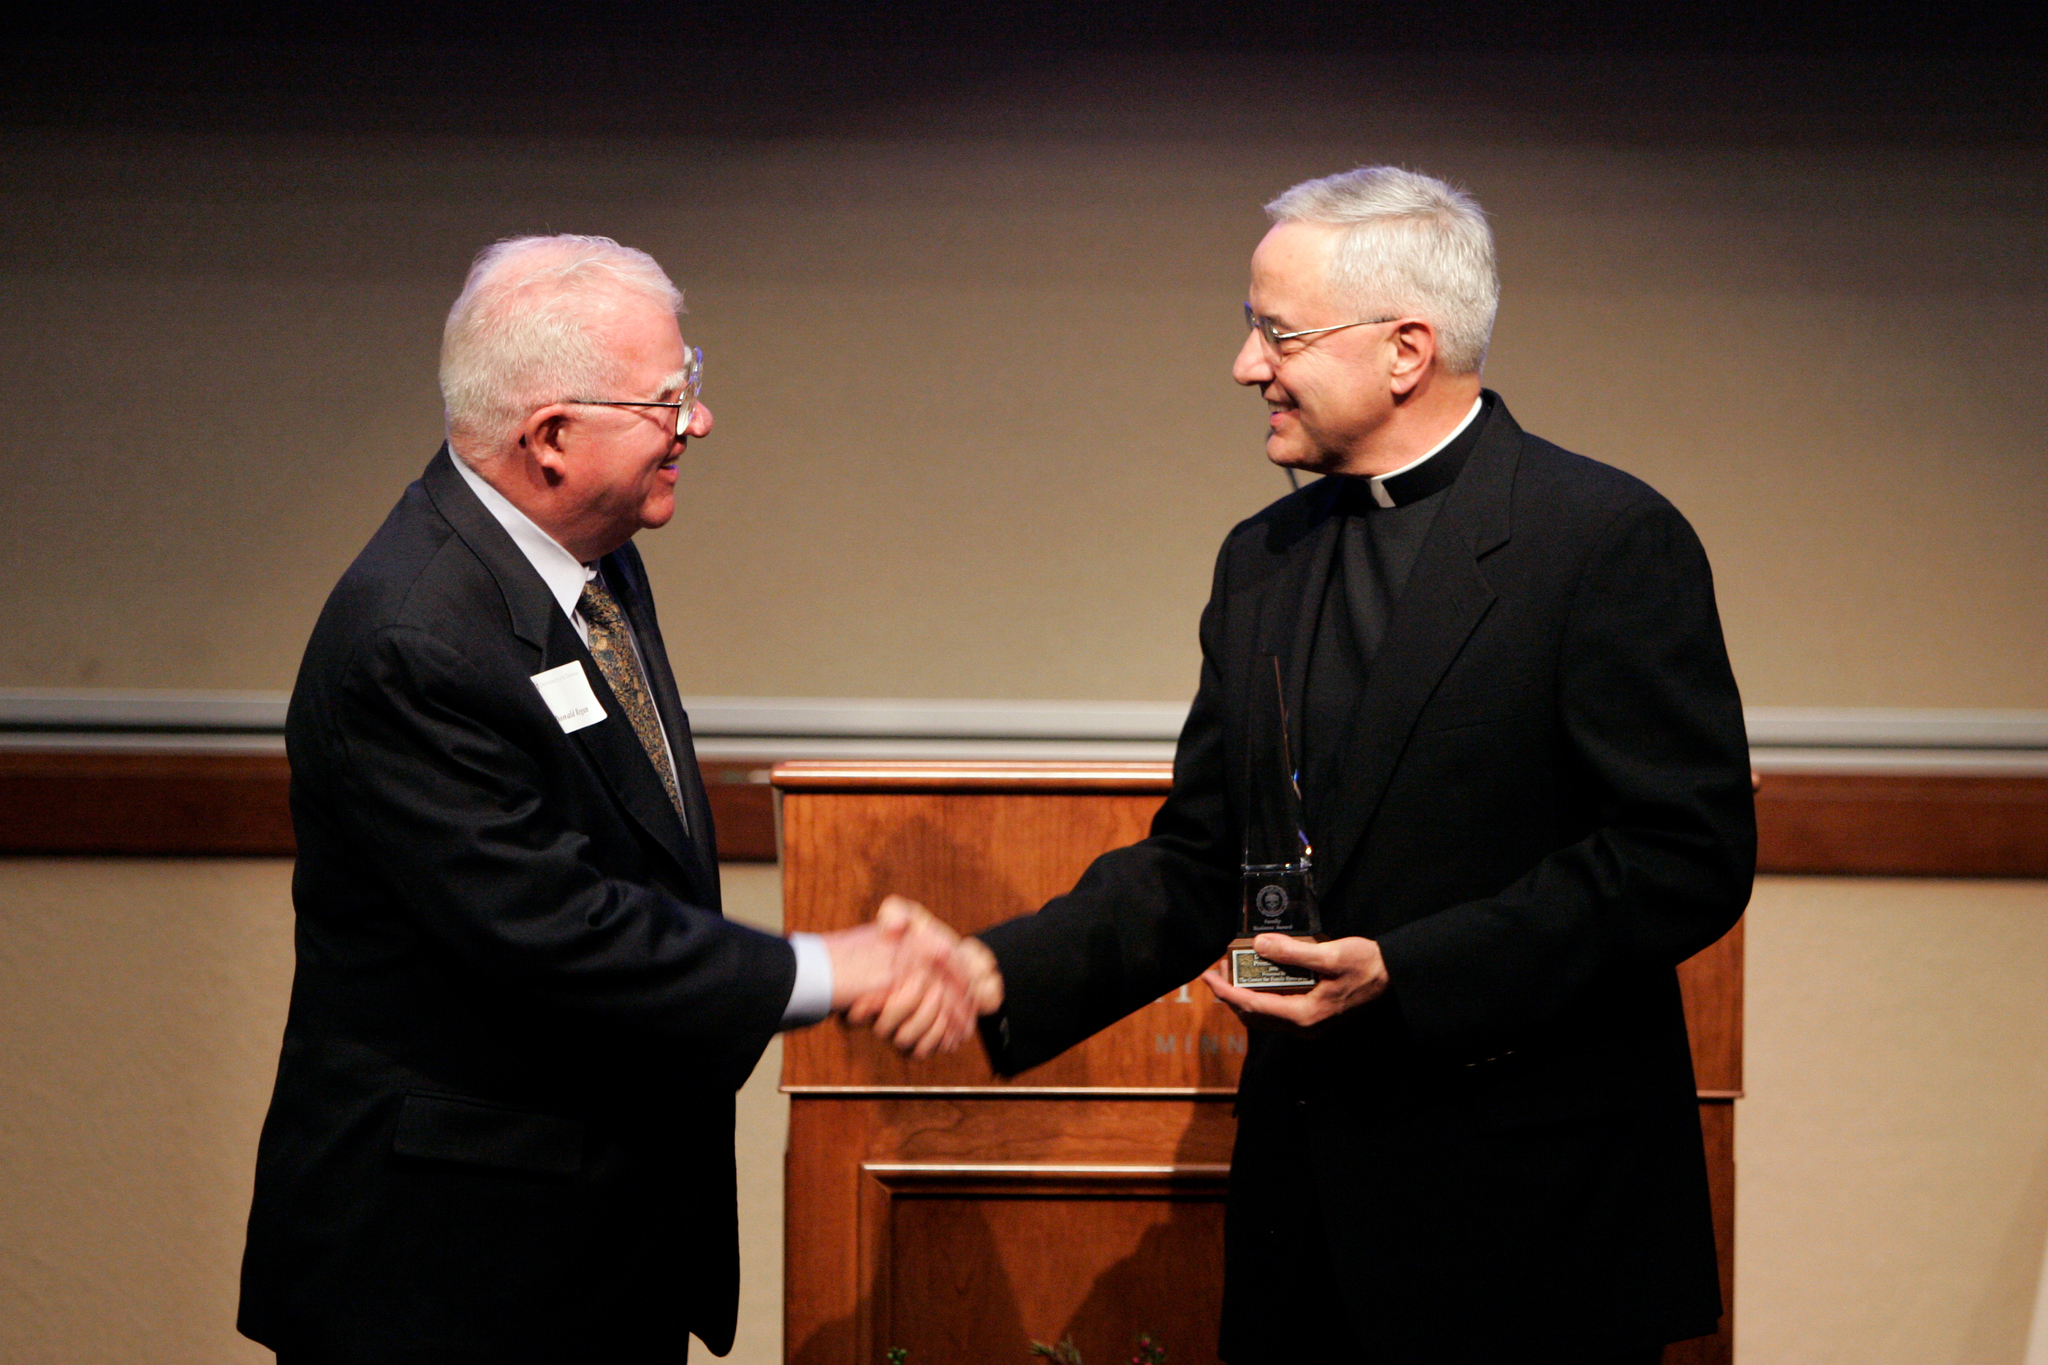 Don Regan and Fr. Dennis Dease